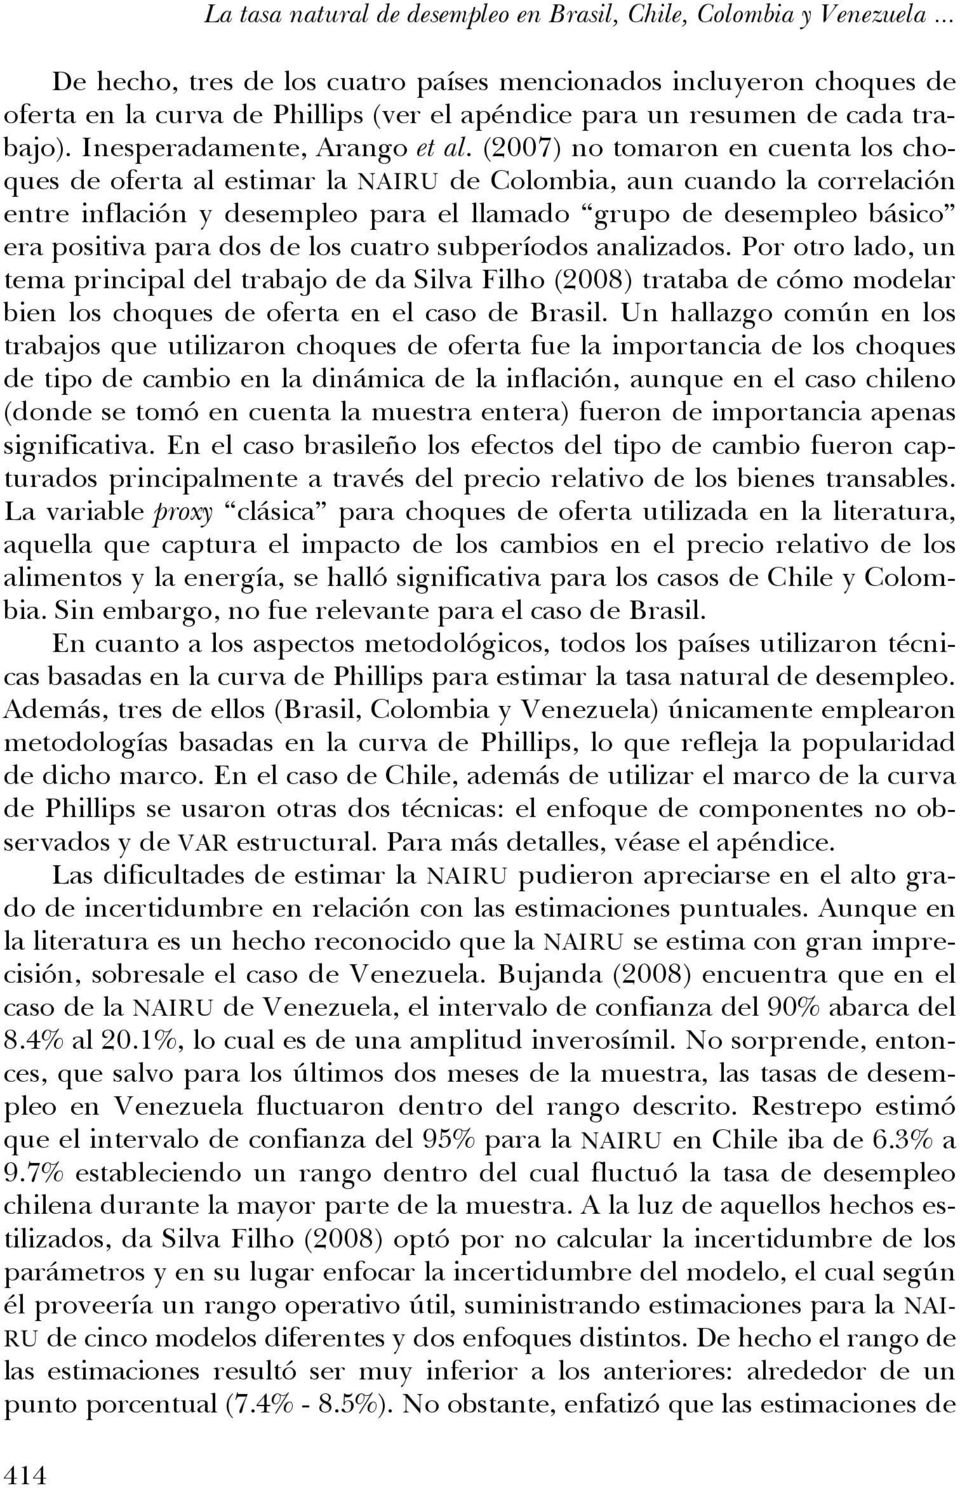 (2007) no omaron en cuena los choques de ofera al esimar la NAIRU de Colombia, aun cuando la correlación enre inflación y desempleo para el llamado grupo de desempleo básico era posiiva para dos de